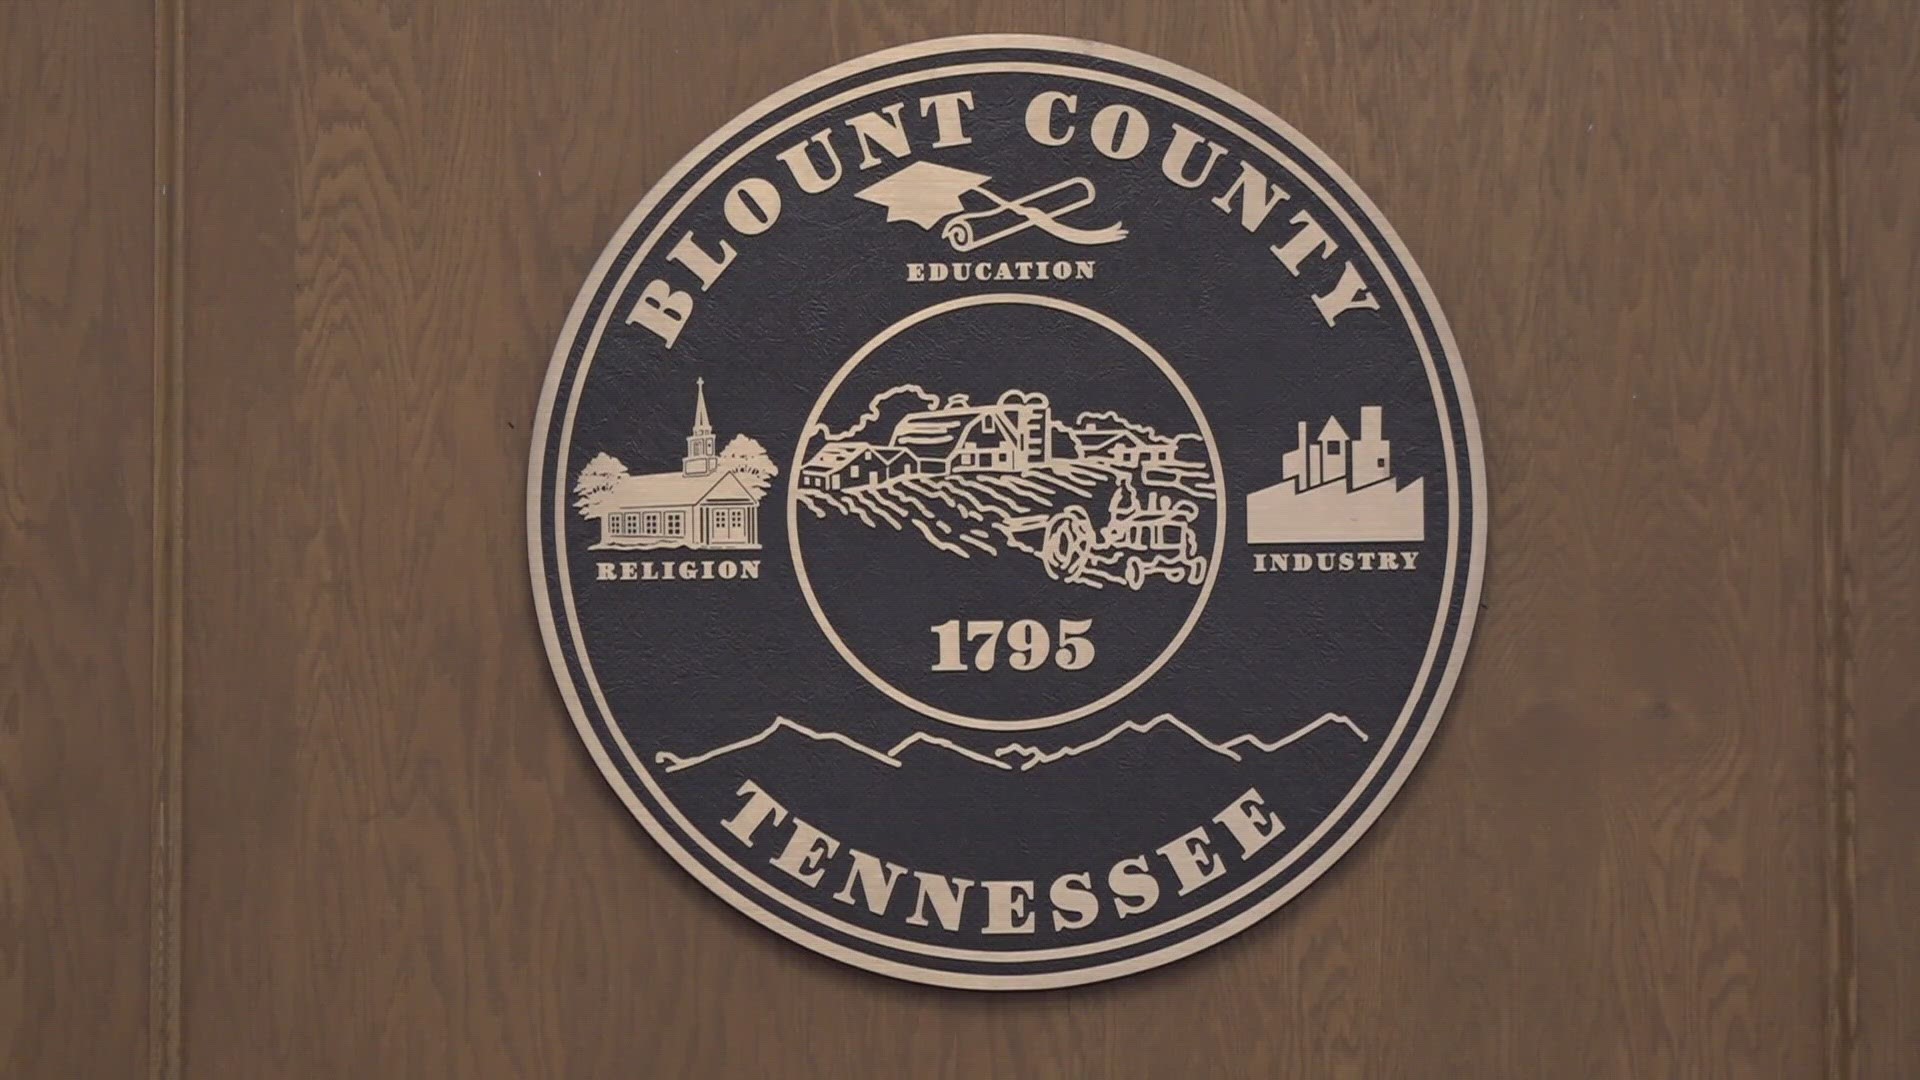 Blount Co passes proposal for audit of Blount Memorial wbir com